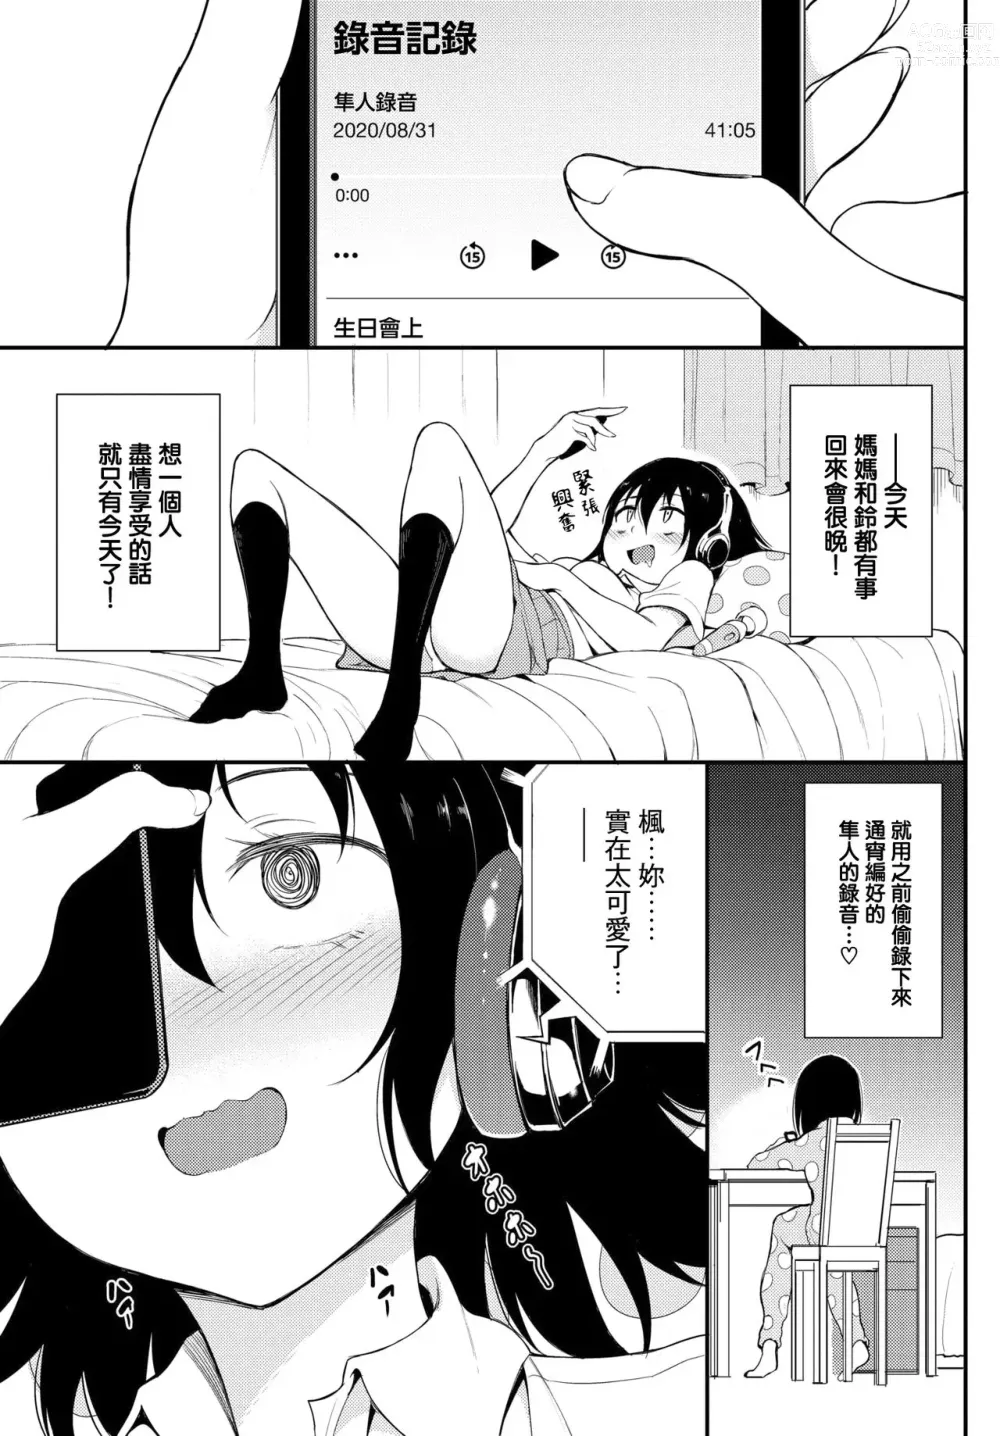 Page 3 of manga Kaede to Suzu 4.5